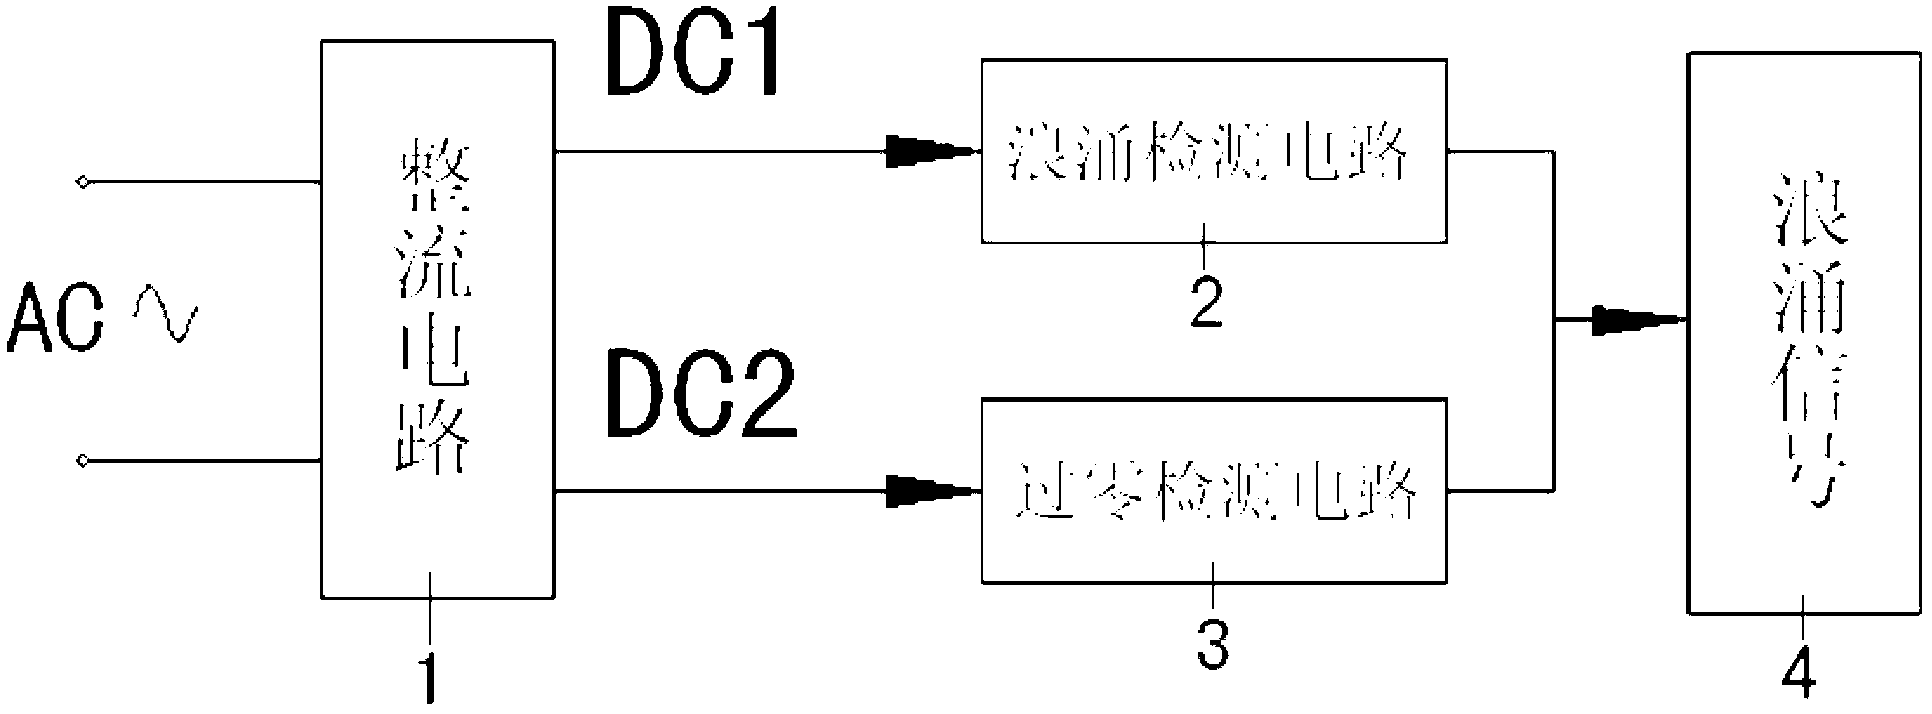 Voltage surge detection circuit